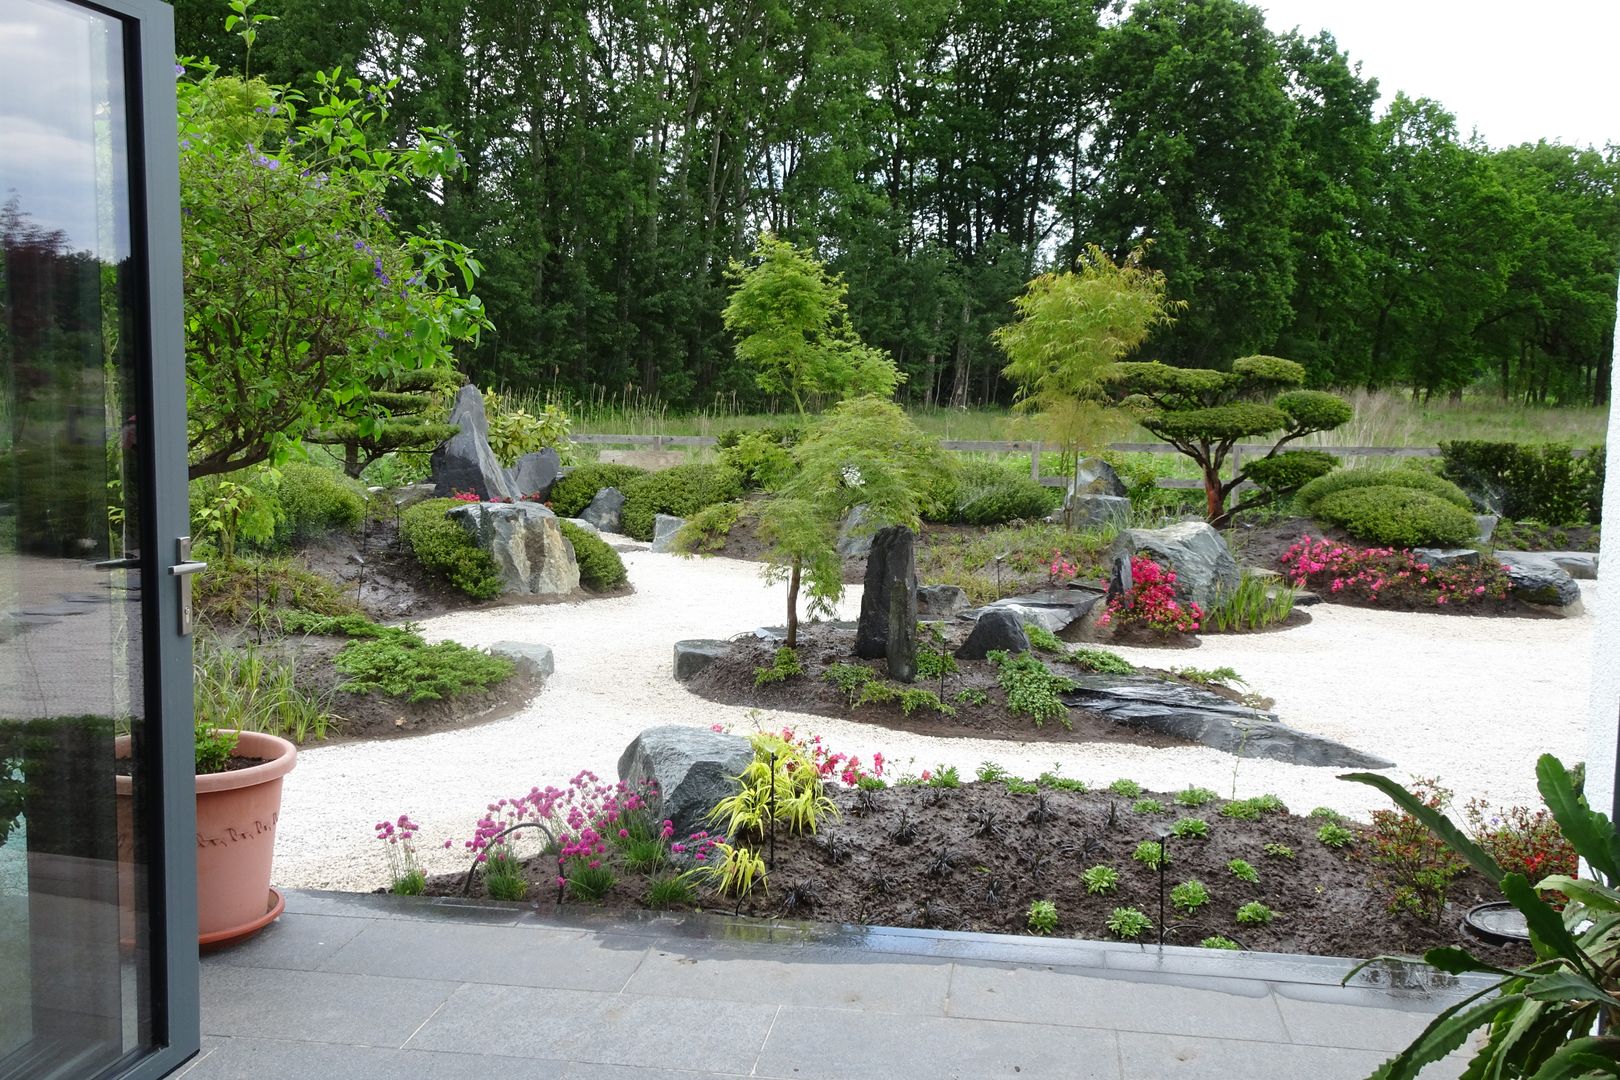 Zengarten bei Hannover mit Tsukubai, japan-garten-kultur japan-garten-kultur Jardines zen